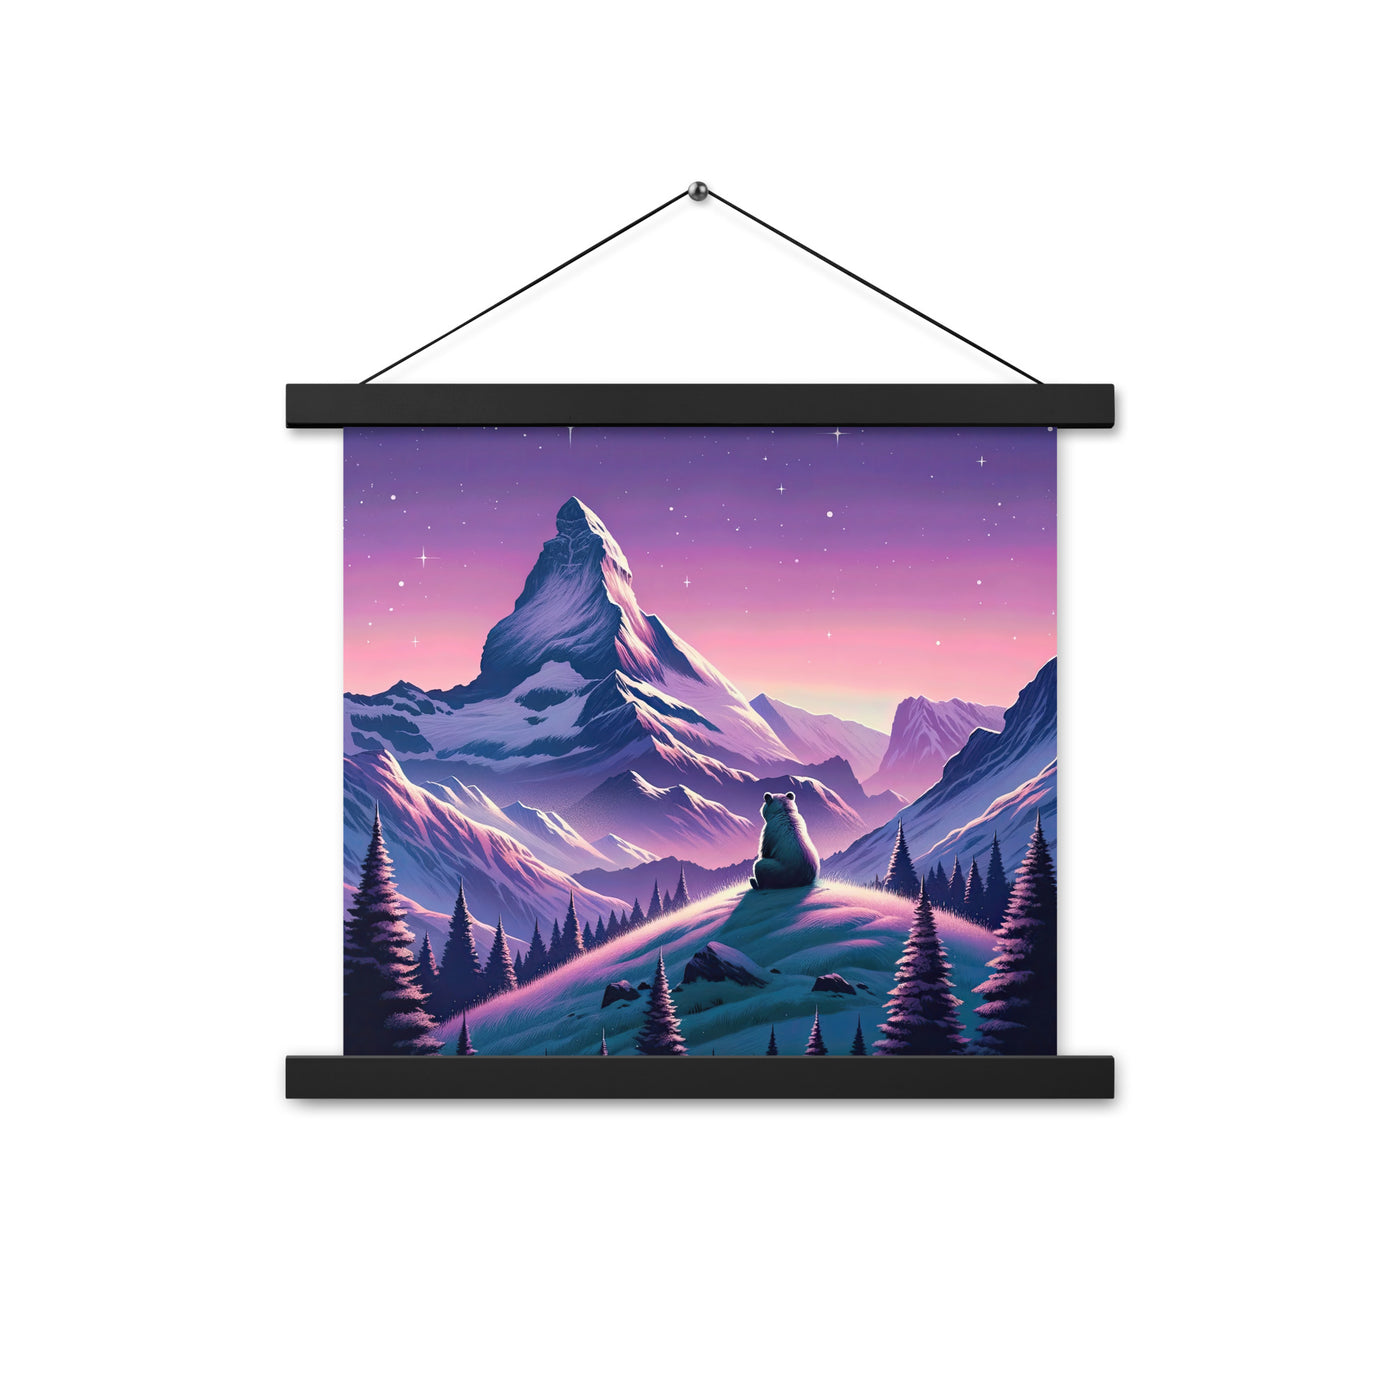 Bezaubernder Alpenabend mit Bär, lavendel-rosafarbener Himmel (AN) - Premium Poster mit Aufhängung xxx yyy zzz 35.6 x 35.6 cm